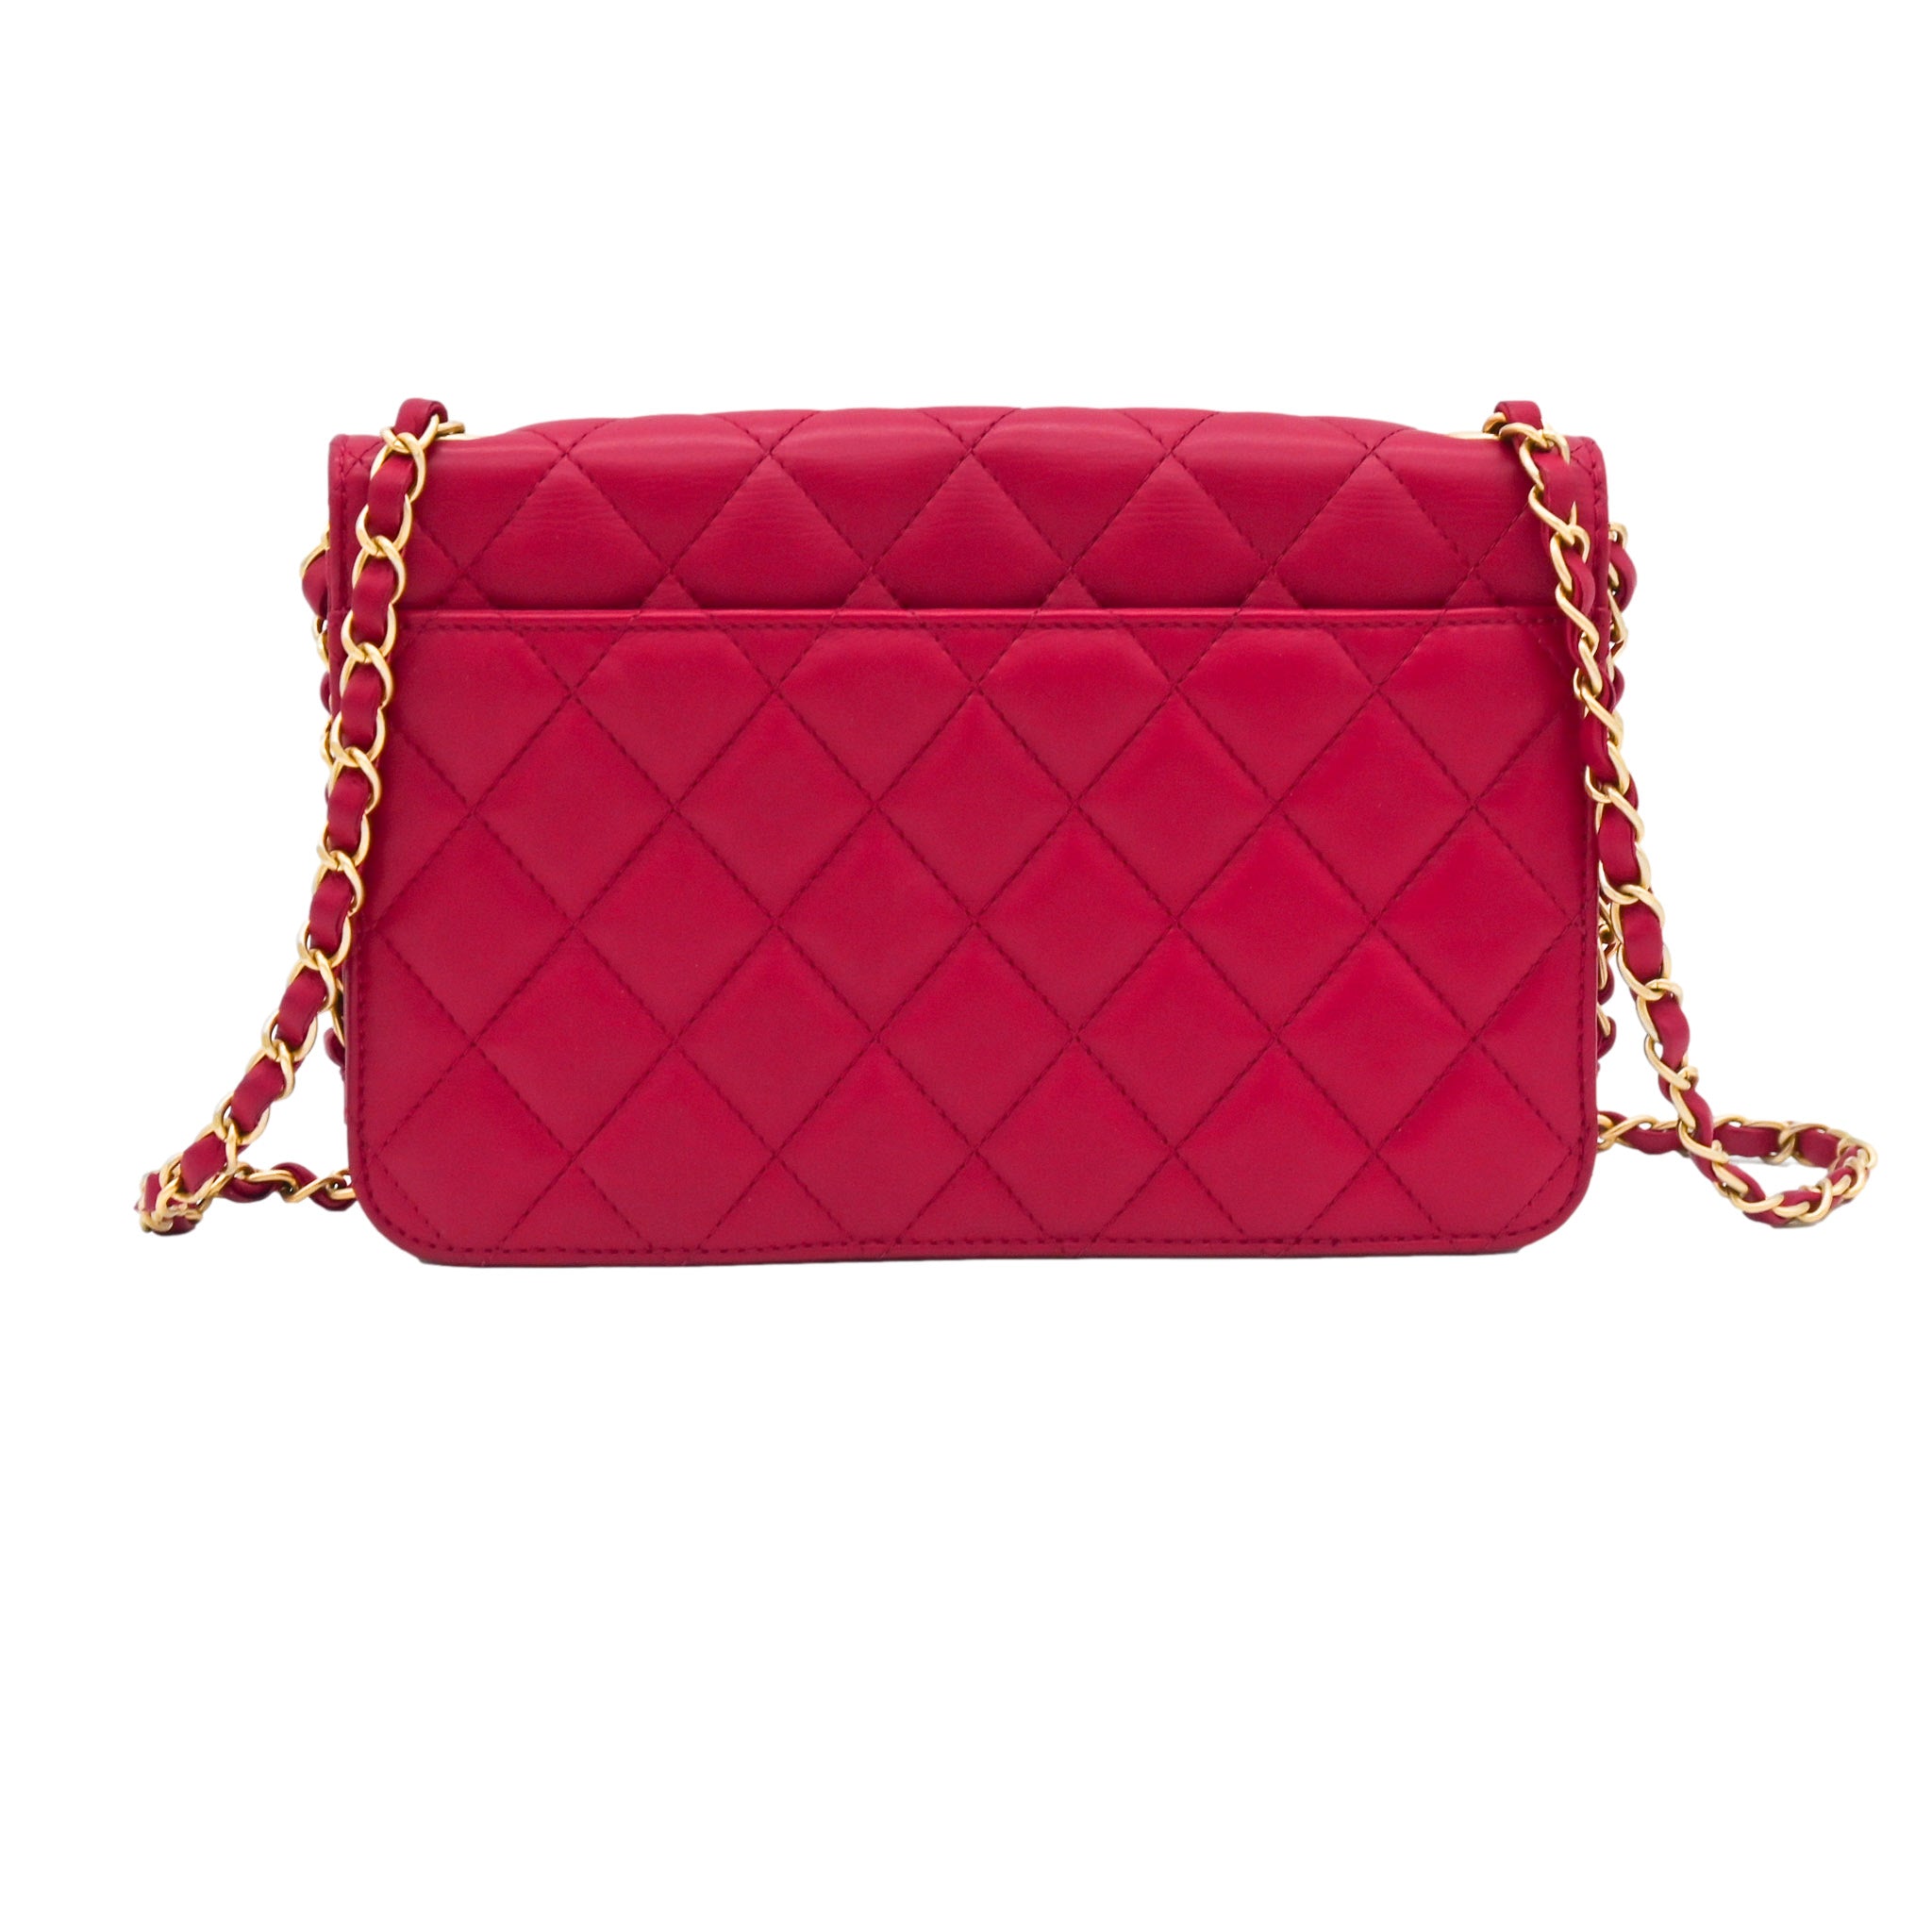 CHANEL Chanel Matelasse Red Lambskin Shoulder Bag - Vault 55